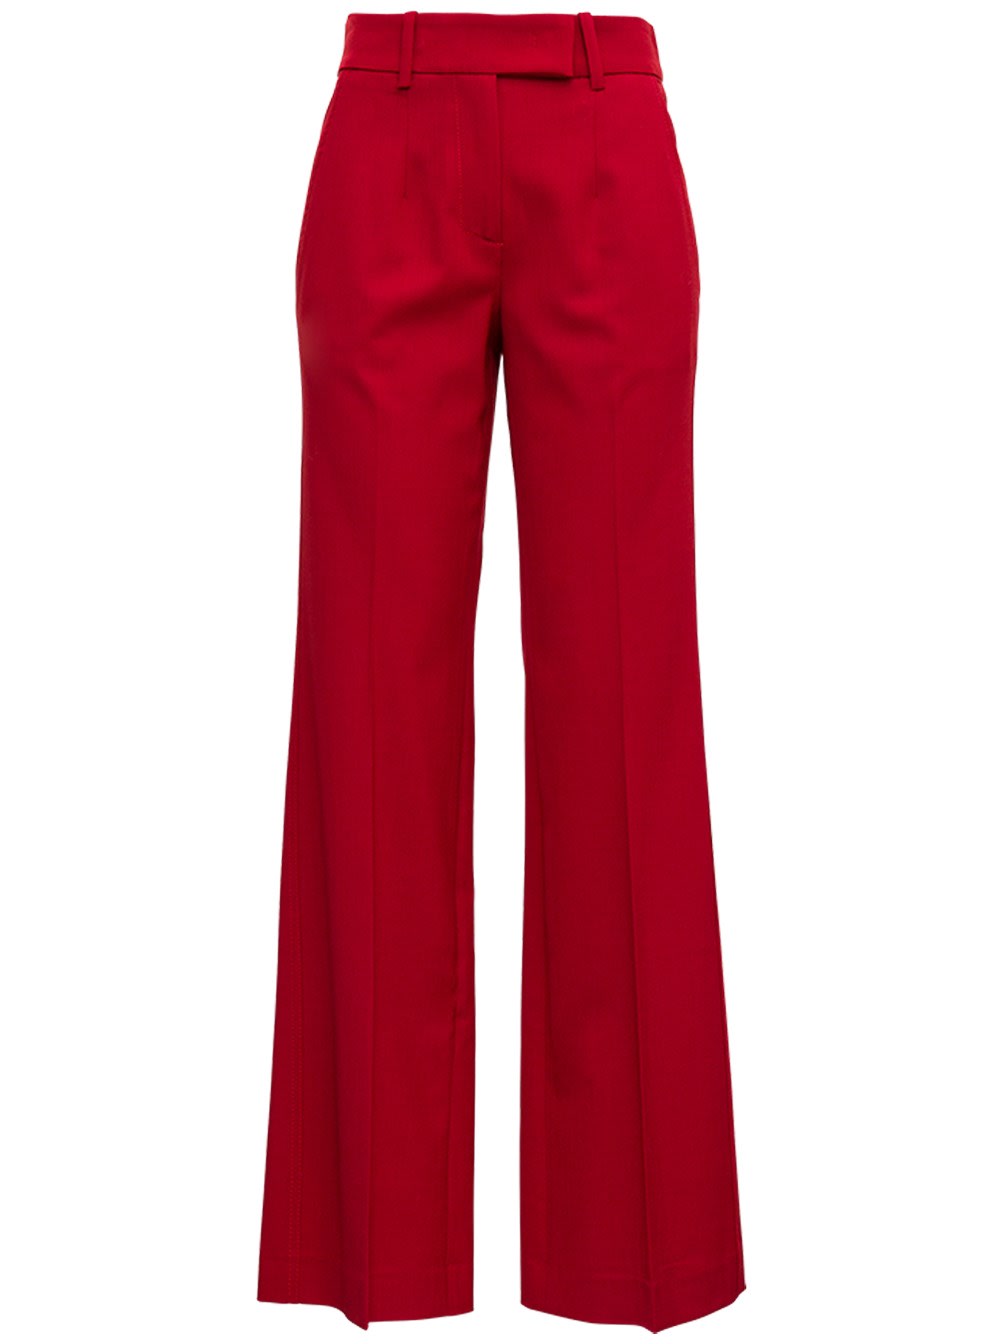 Tela Red Pants In Wool Blend